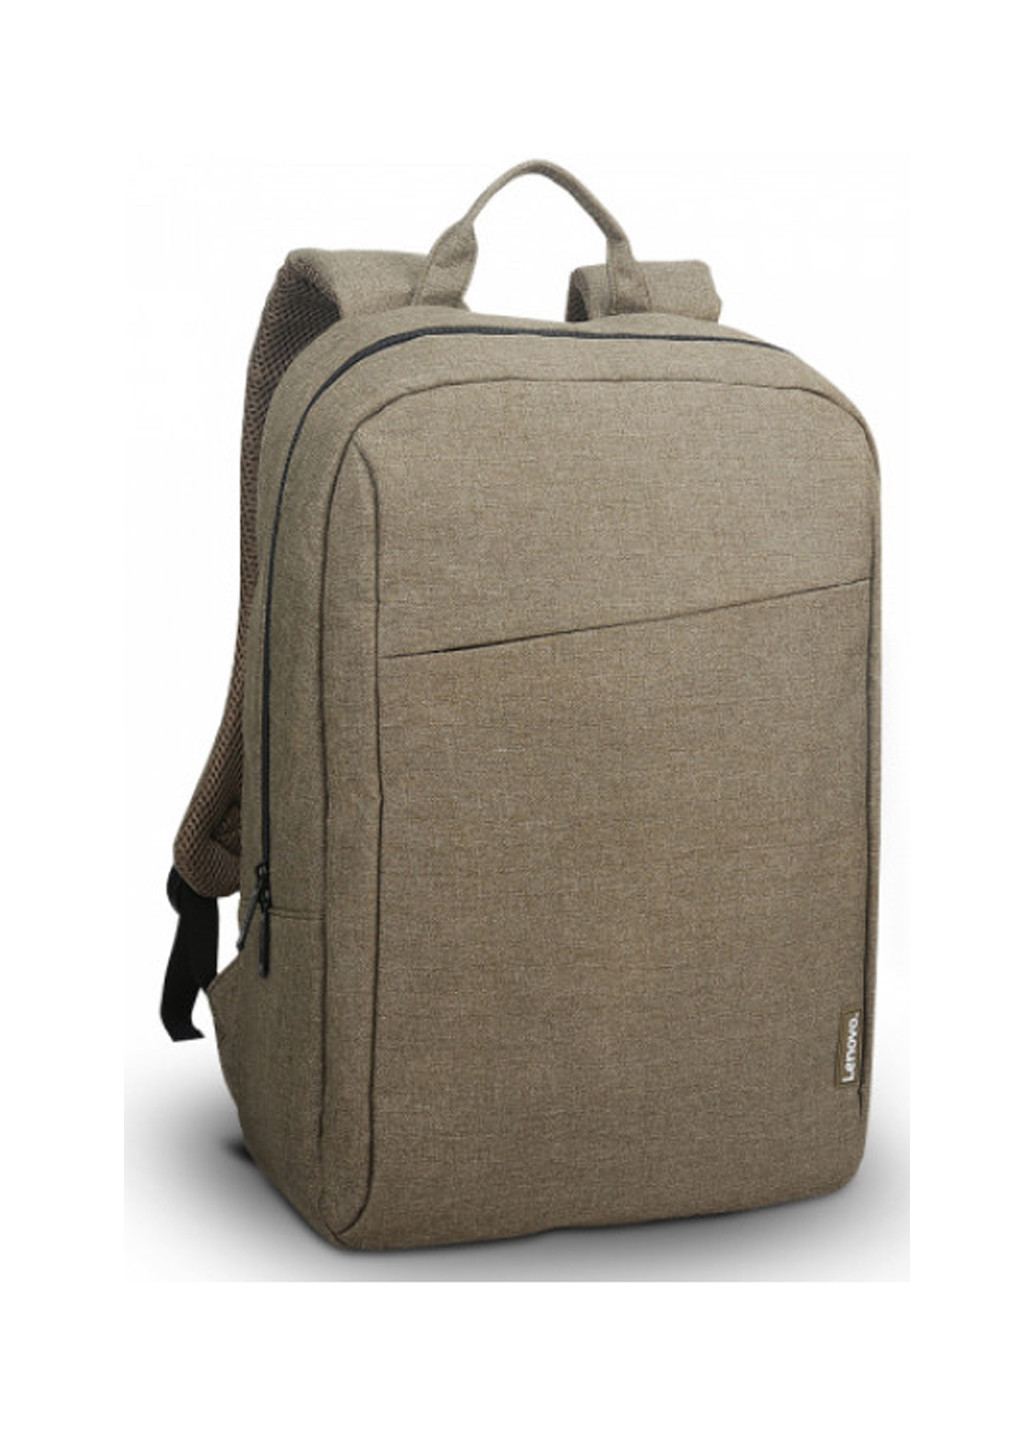 Рюкзак Casual B210 для ноутбука 15,6" зелений (GX40Q17228) Lenovo backpack b210 casual 15.6" green (gx40q17228) (137227693)